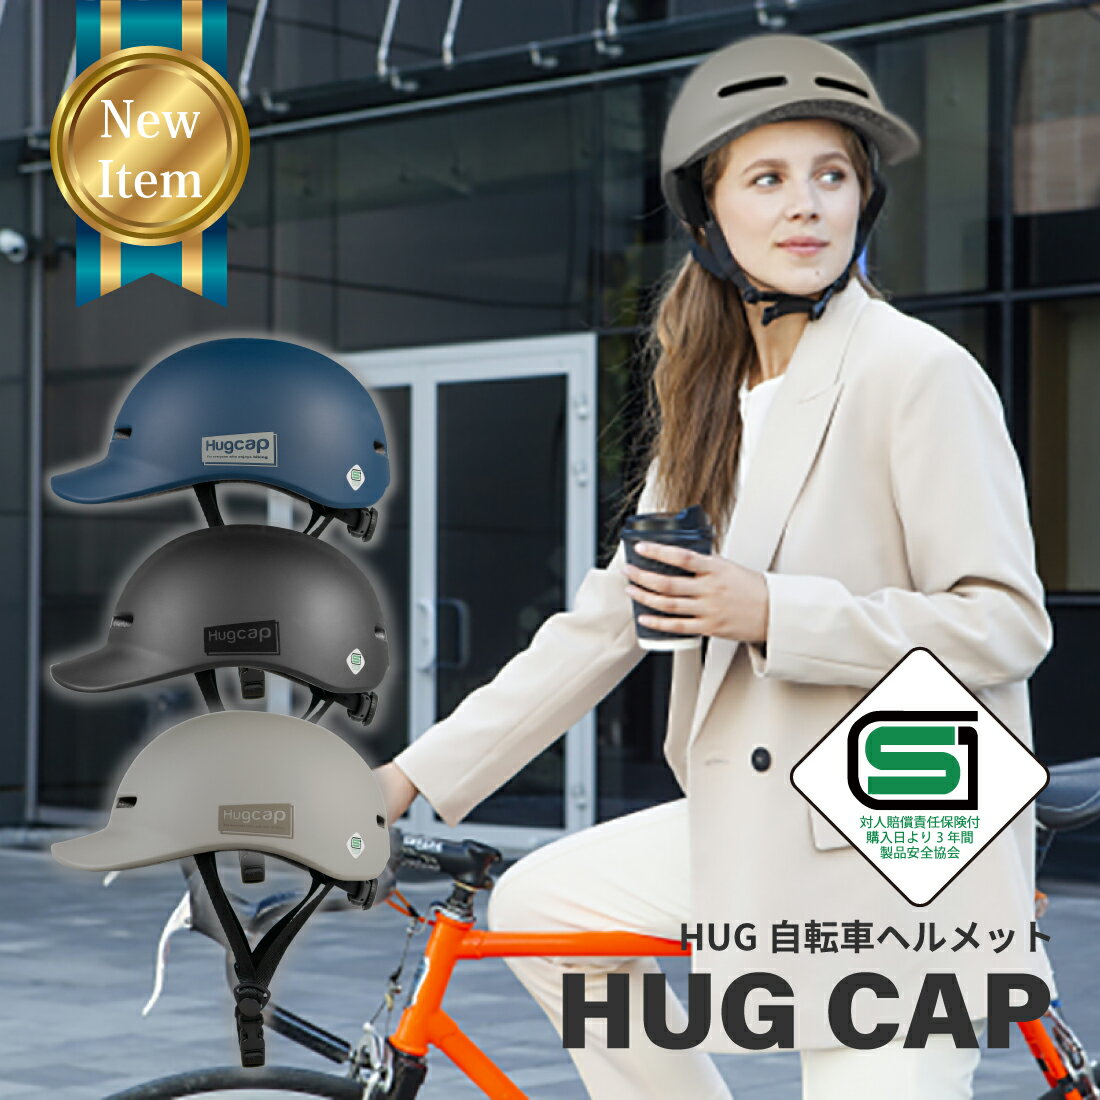 自転車 ヘルメット 大人 子供 兼用 SG規格 SGマーク 安全 超硬質ABS素材 自転車ヘルメット HUG ハグ ユニセックス 通学 通勤 キャップ型 おしゃれ Hugcap ハグキャップ SG サイズ調節可能 スー…